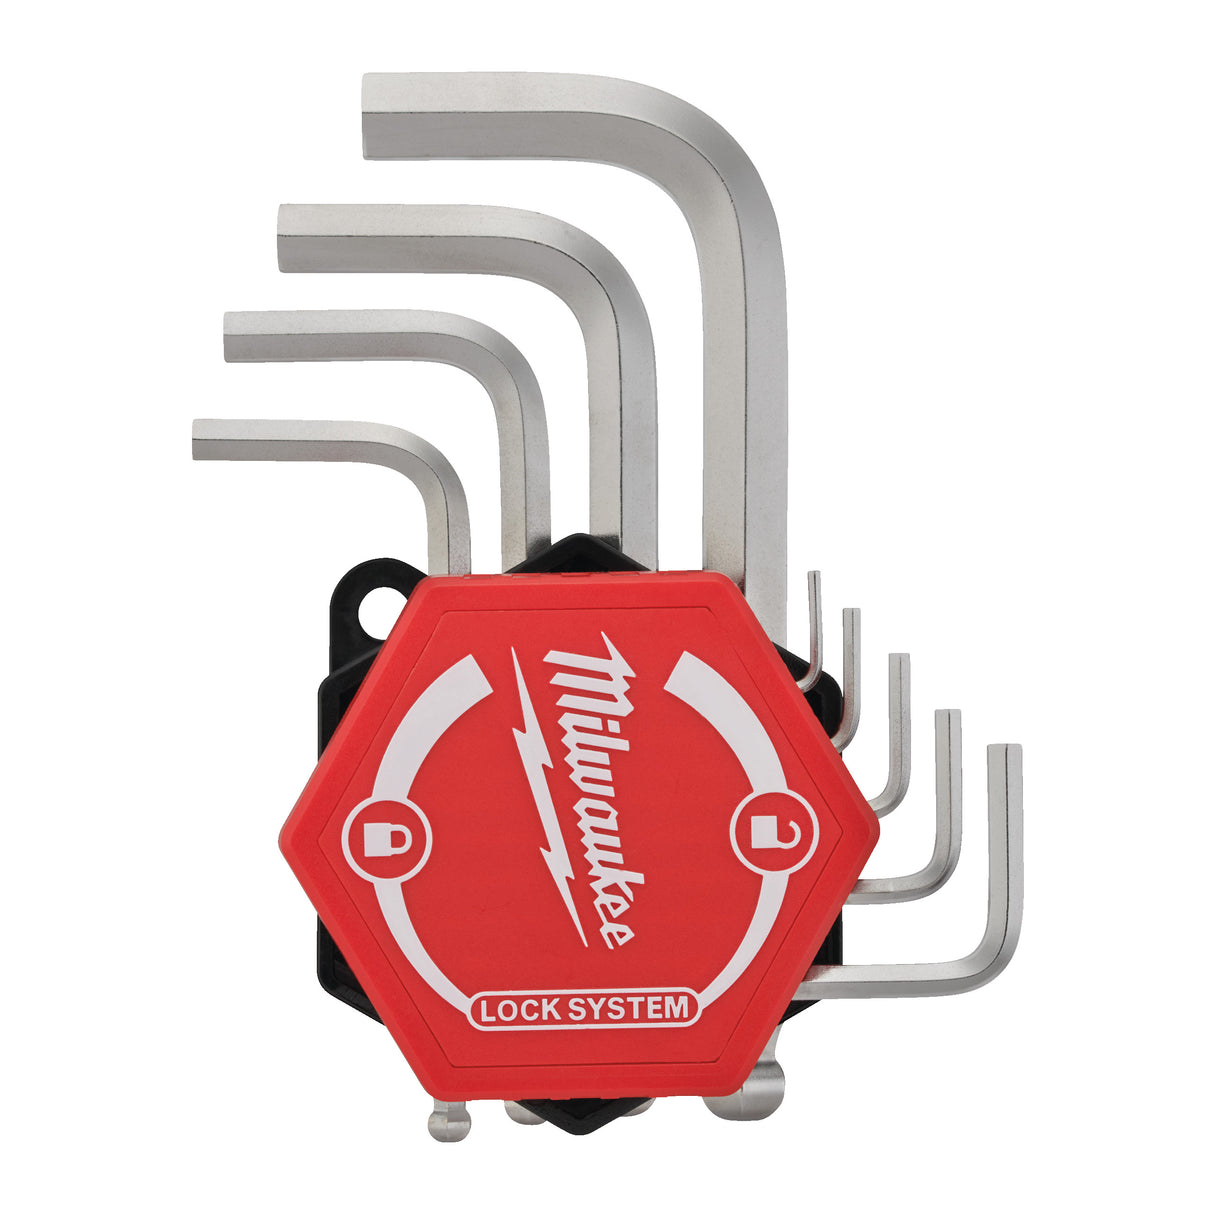 Milwaukee Kompakt-Innensechskantschlüssel 4932492399 roteswerkzeug